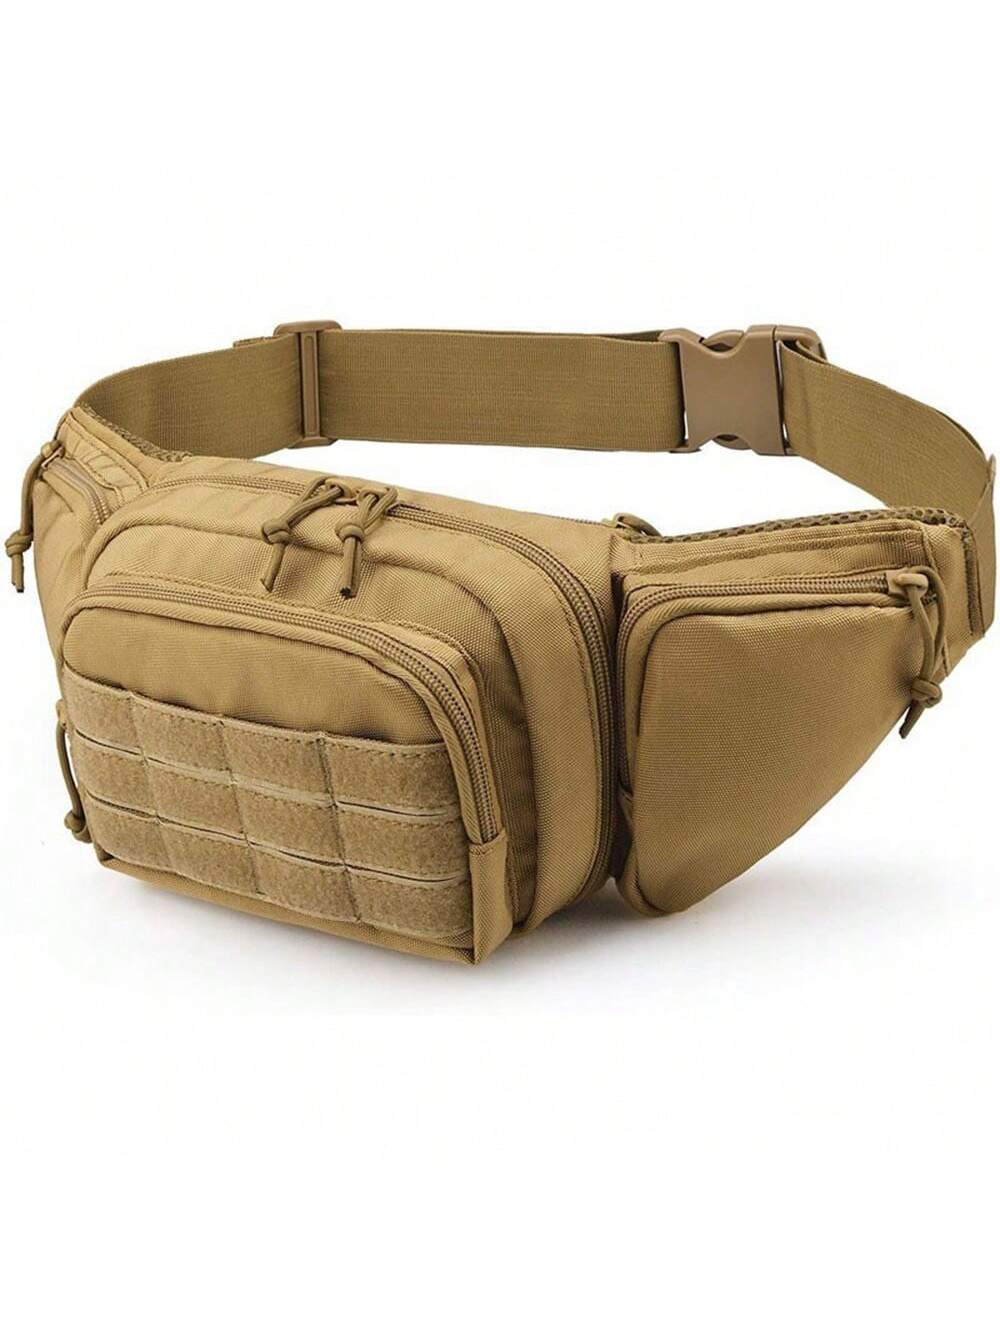 Тактический поясной рюкзак, хаки нейлоновая поясная сумка для охоты на открытом воздухе 1000d облегченная модульная сумка сумка для кемпинга